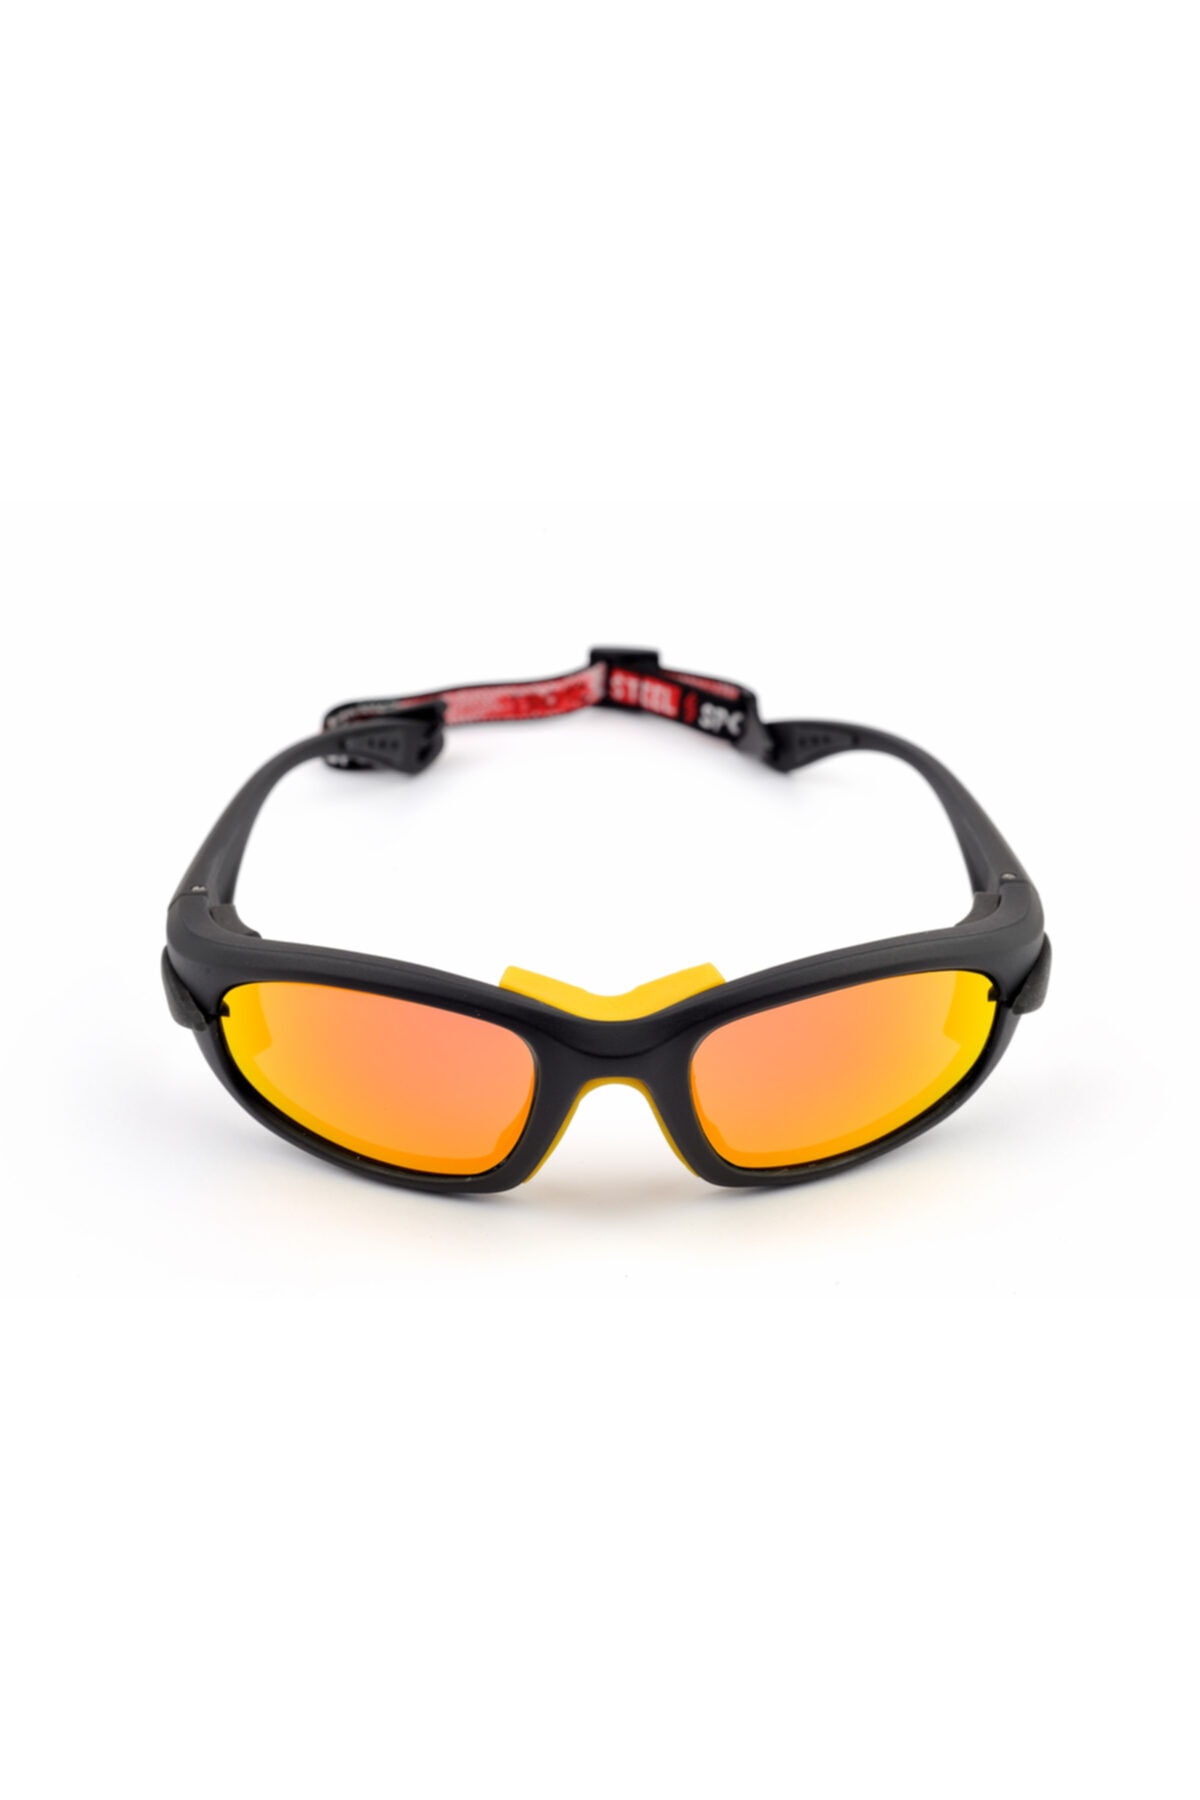 Steel Sport Fullsafe Mat Siyah-sarı Burunluk [11-17 Yaş Arası] Sporcu Güneş Gözlüğü